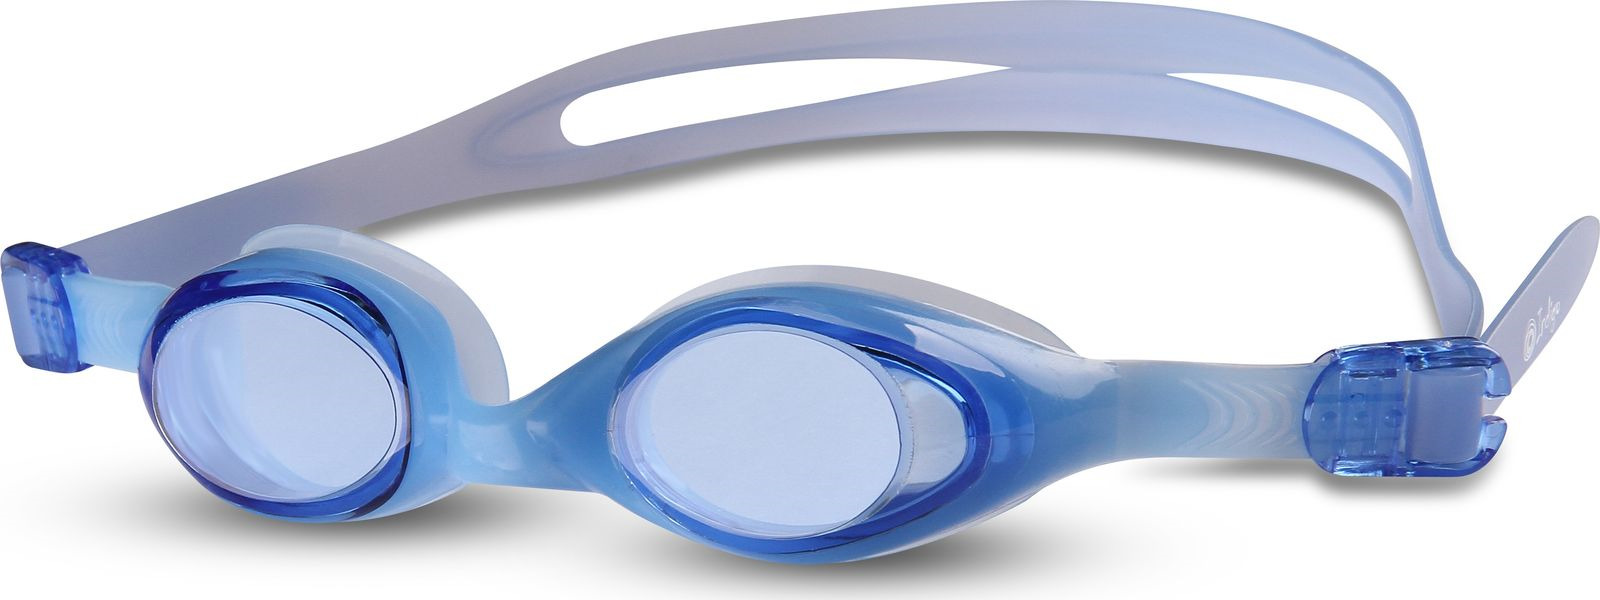 Очки для плавания детские Indigo, 603 G, синий